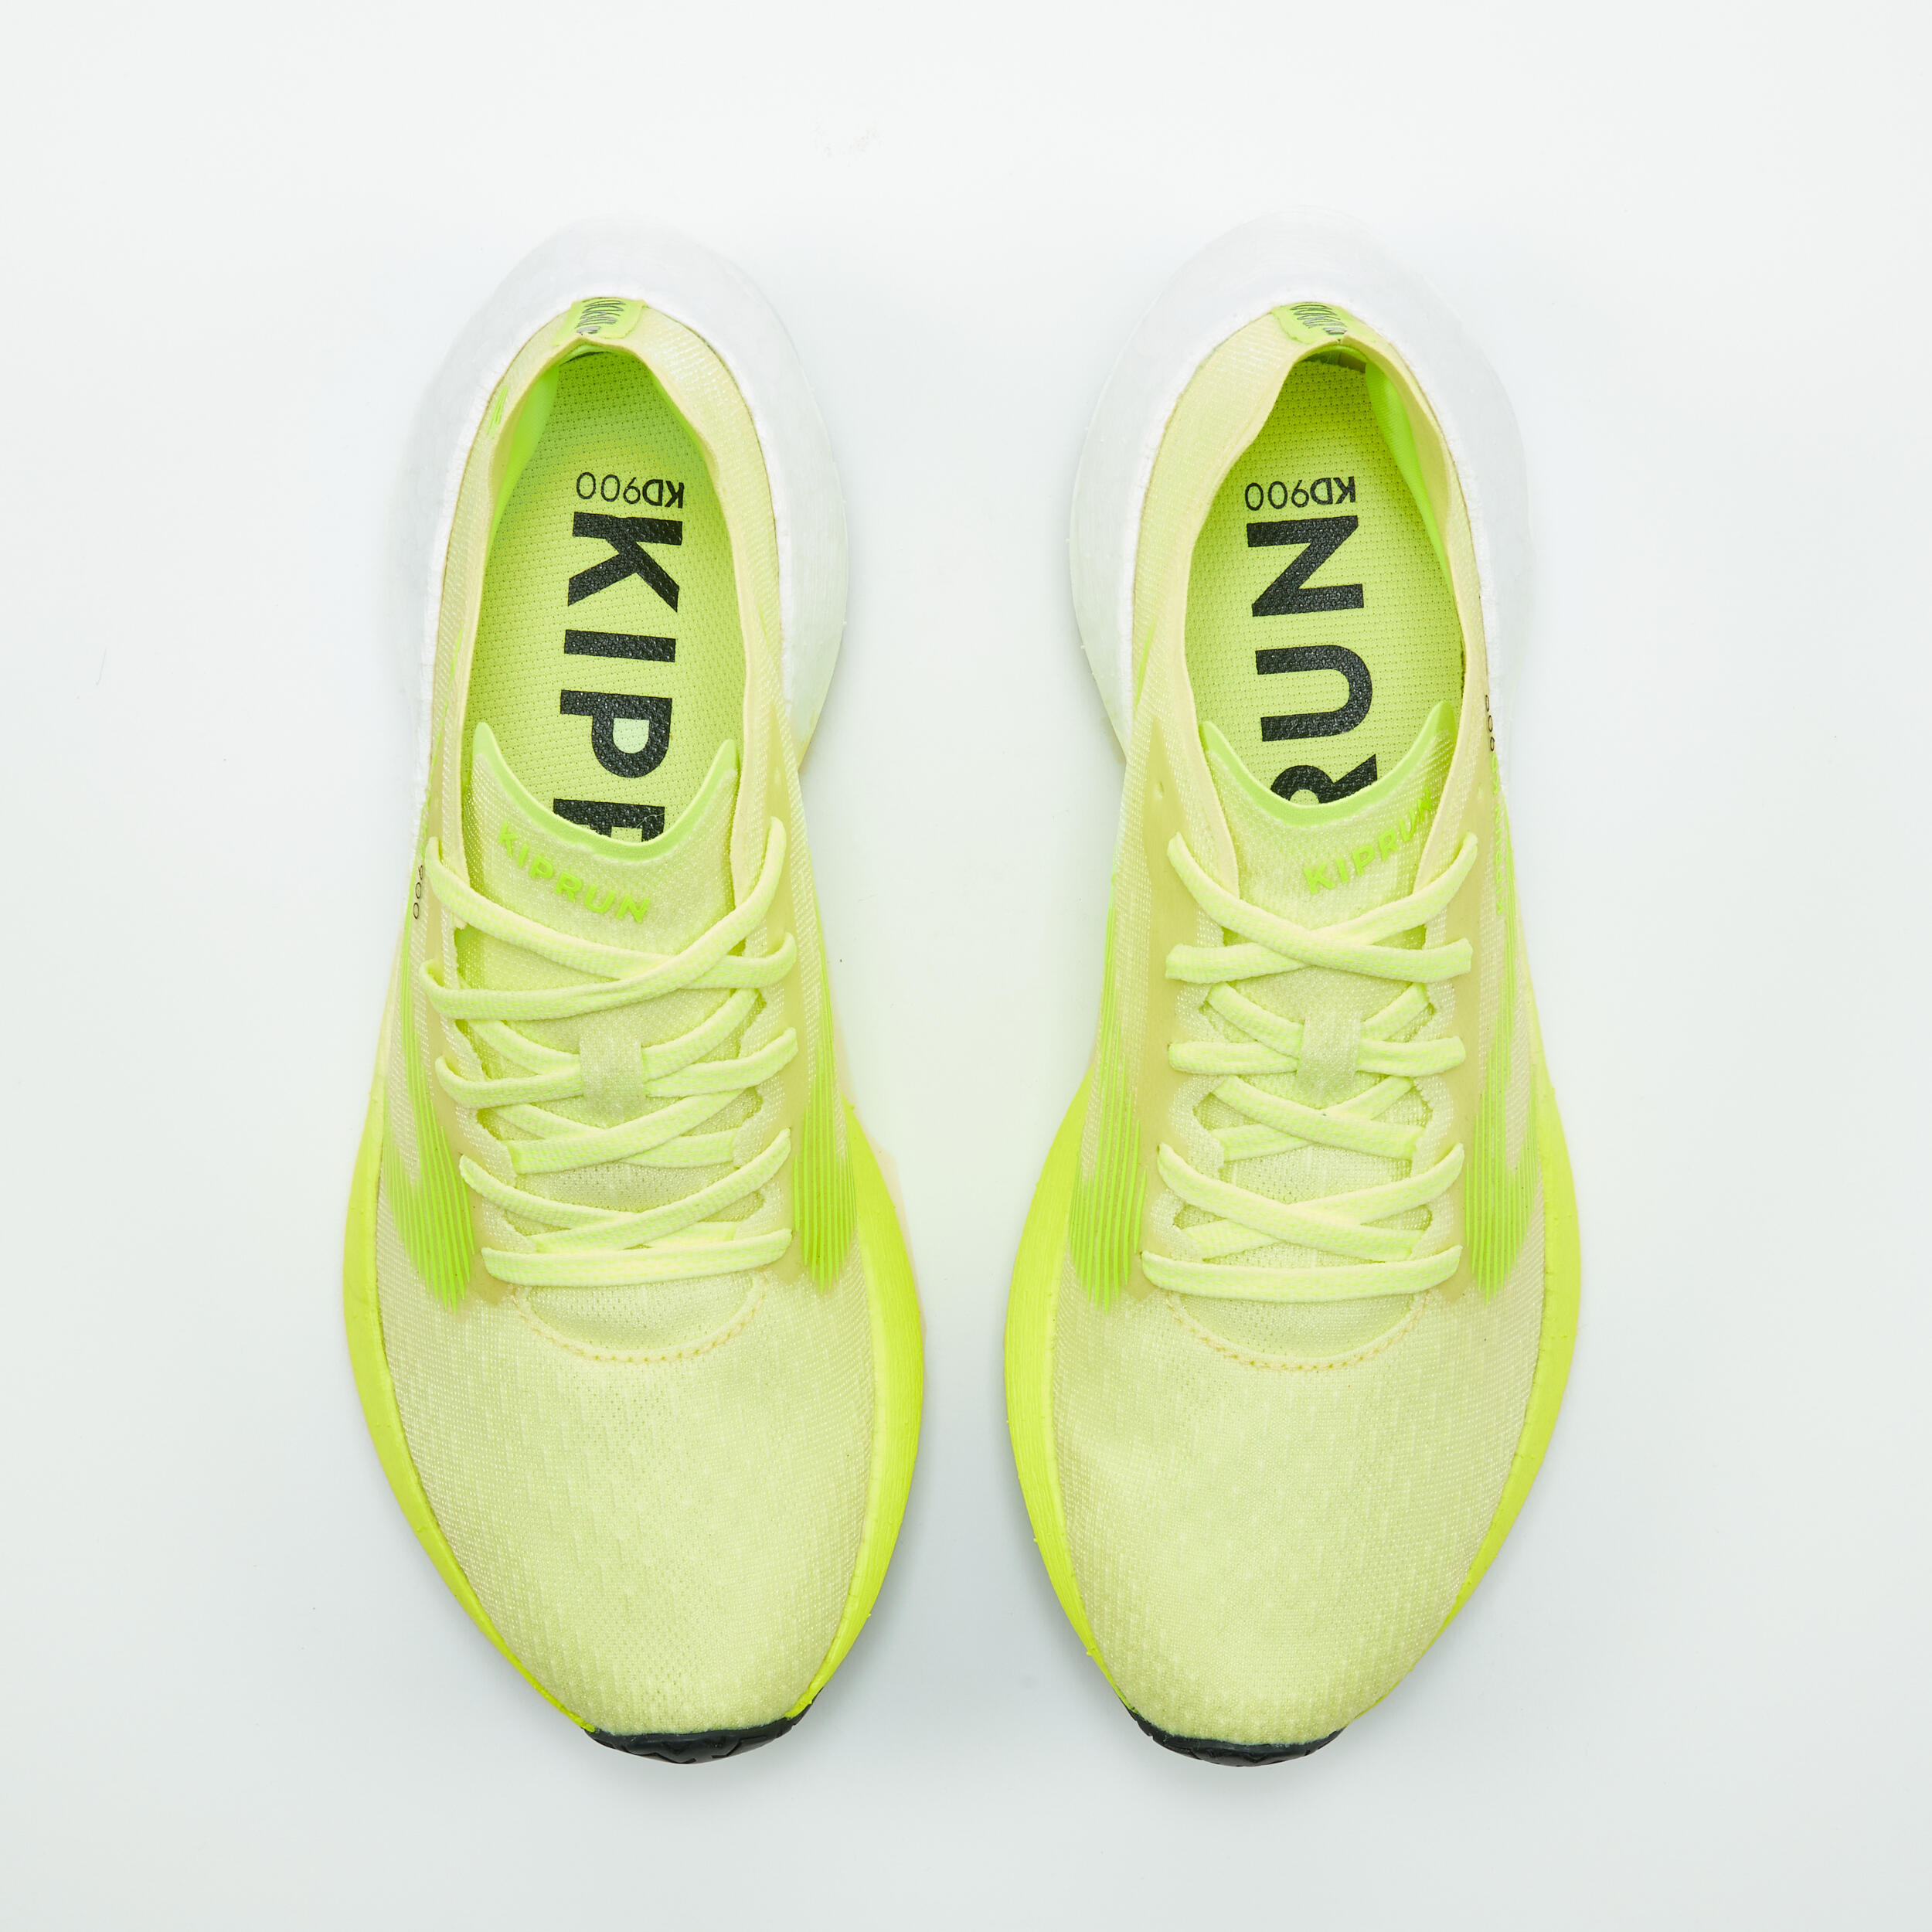 KIPRUN KD900 Women's Running Shoes -Yellow 7/8